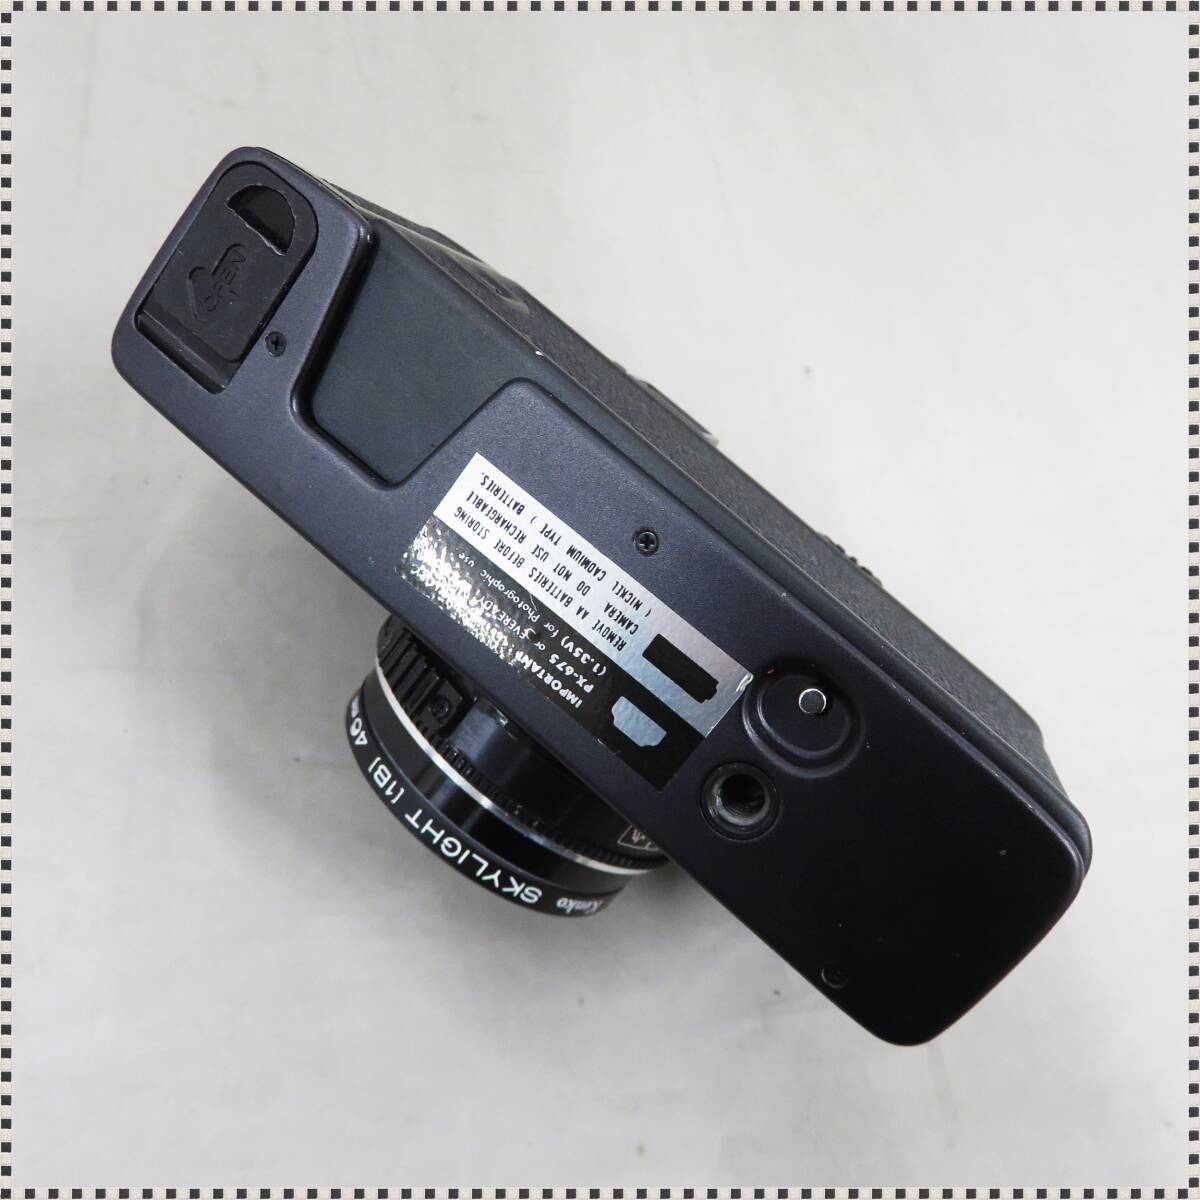 【 シャッターOK 】 コニカ C35 EF ブラック HEXANON 38mm f/2.8 レンジファインダー コンパクトフィルムカメラ KONICA HA032812 【 1円 】_画像7